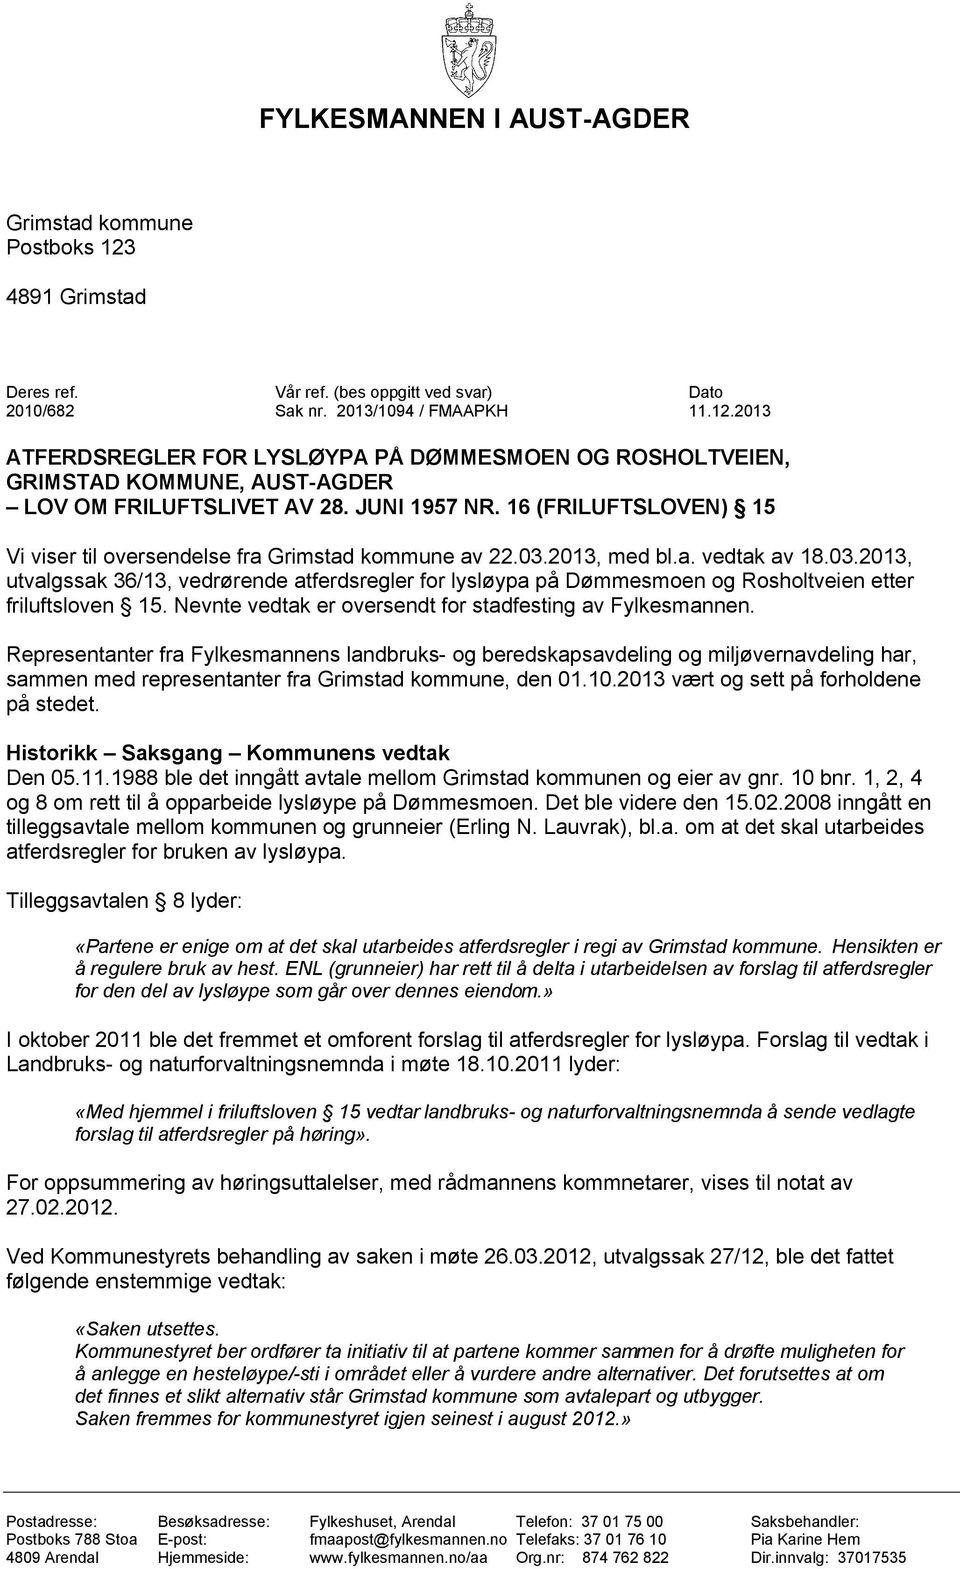 2013, med bl.a. vedtak av 18.03.2013, utvalgssak 36/13, vedrørende atferdsregler for lysløypa på Dømmesmoen og Rosholtveien etter friluftsloven 15.